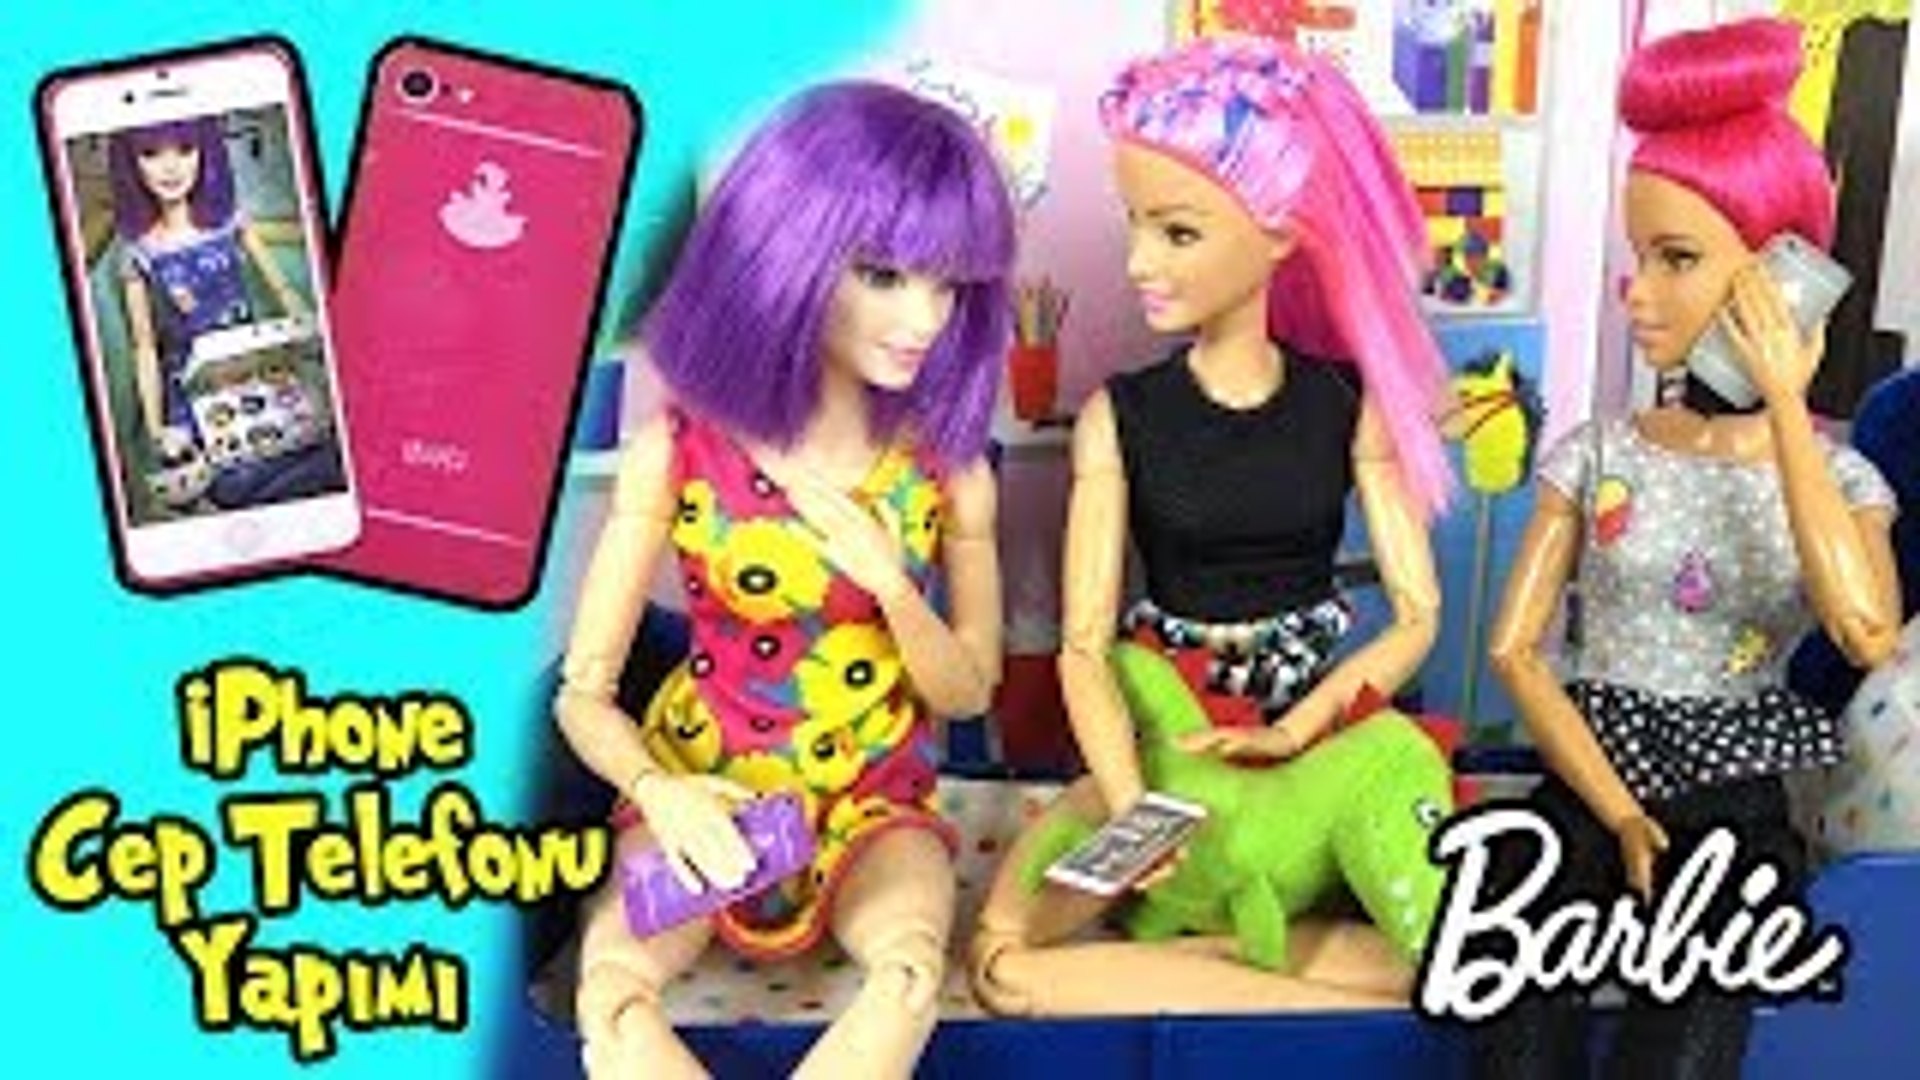 Barbie iPhone Cep Telefonu Yapımı - Kendin Yap Kolay Barbie Eşyaları - Oyuncak  Yap - Dailymotion Video